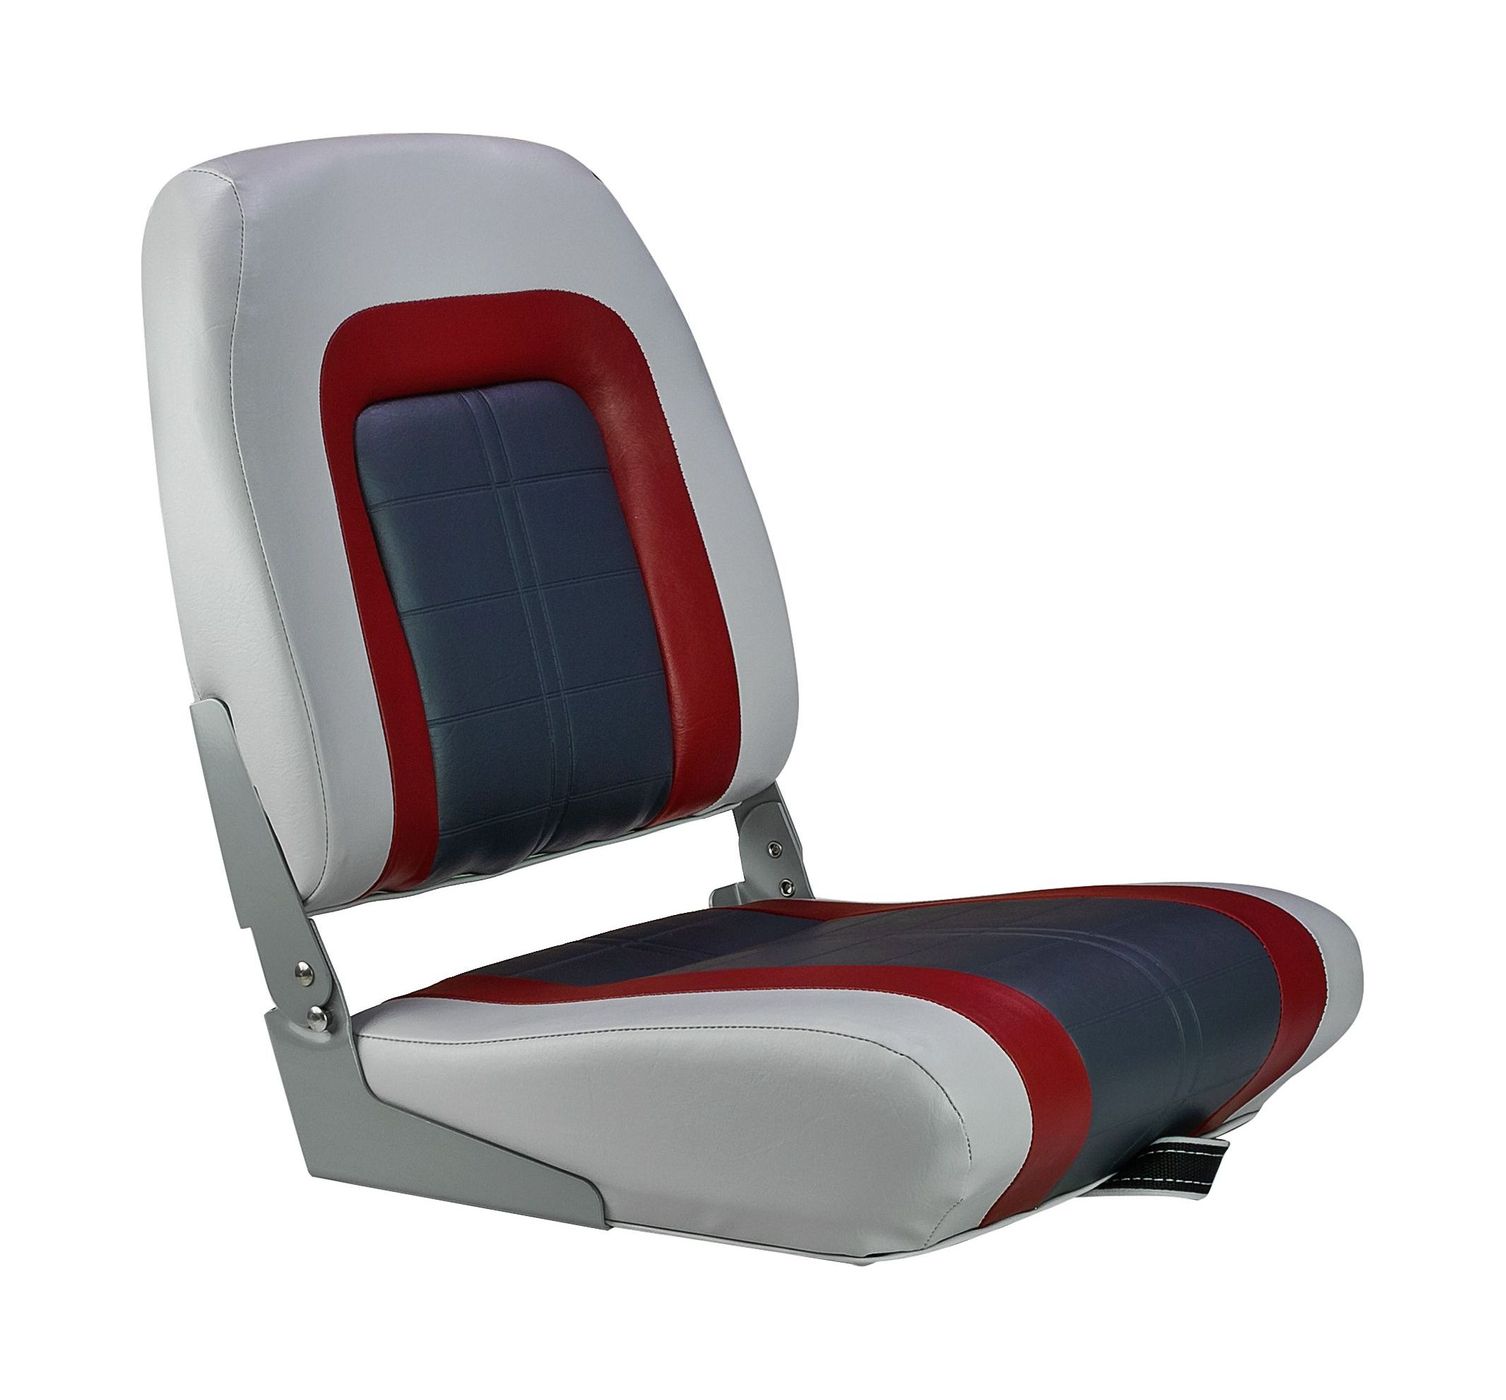 Кресло мягкое складное Special, обивка винил, цвет серый/ красный/ угольный, Marine Rocket 76236GRC-MR